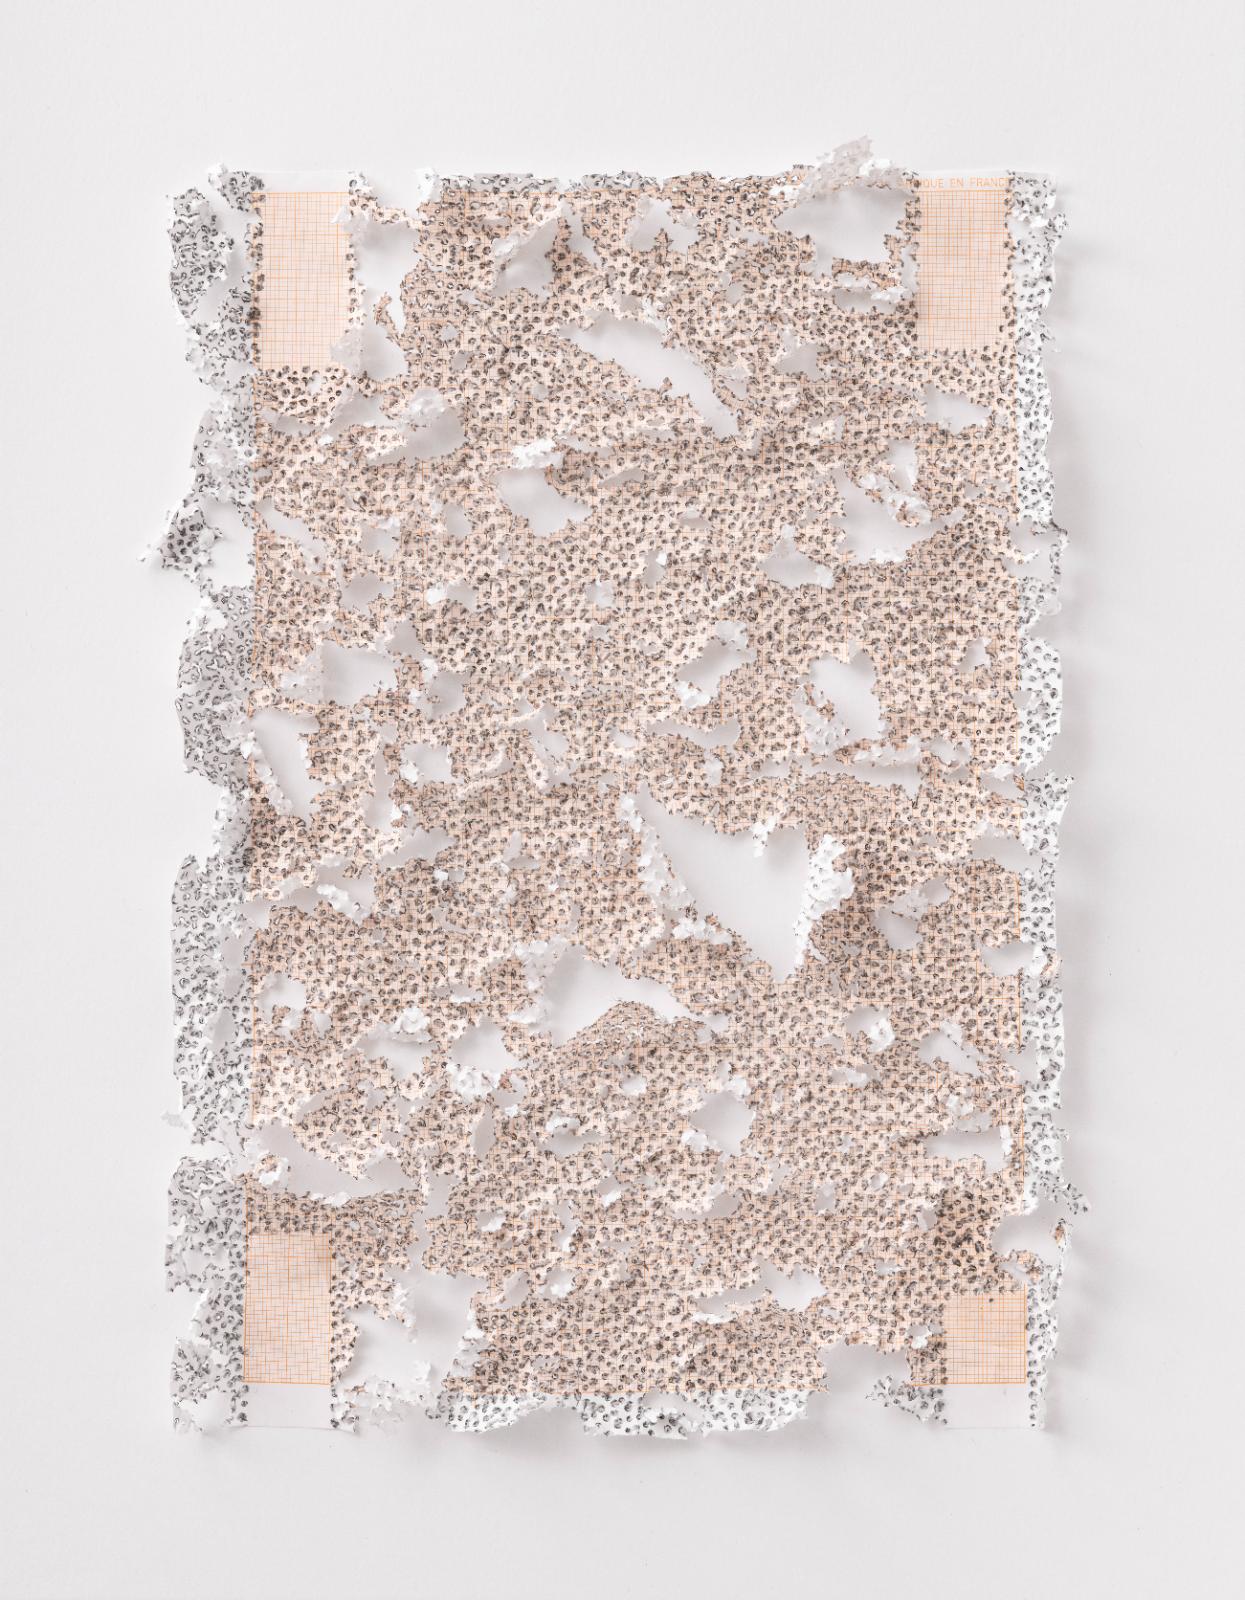 Martin Bruno Schmid Bleistiftspitze in Papier #4 2020 Bleistift in Papier 41 × 31 cm Preis auf Anfrage